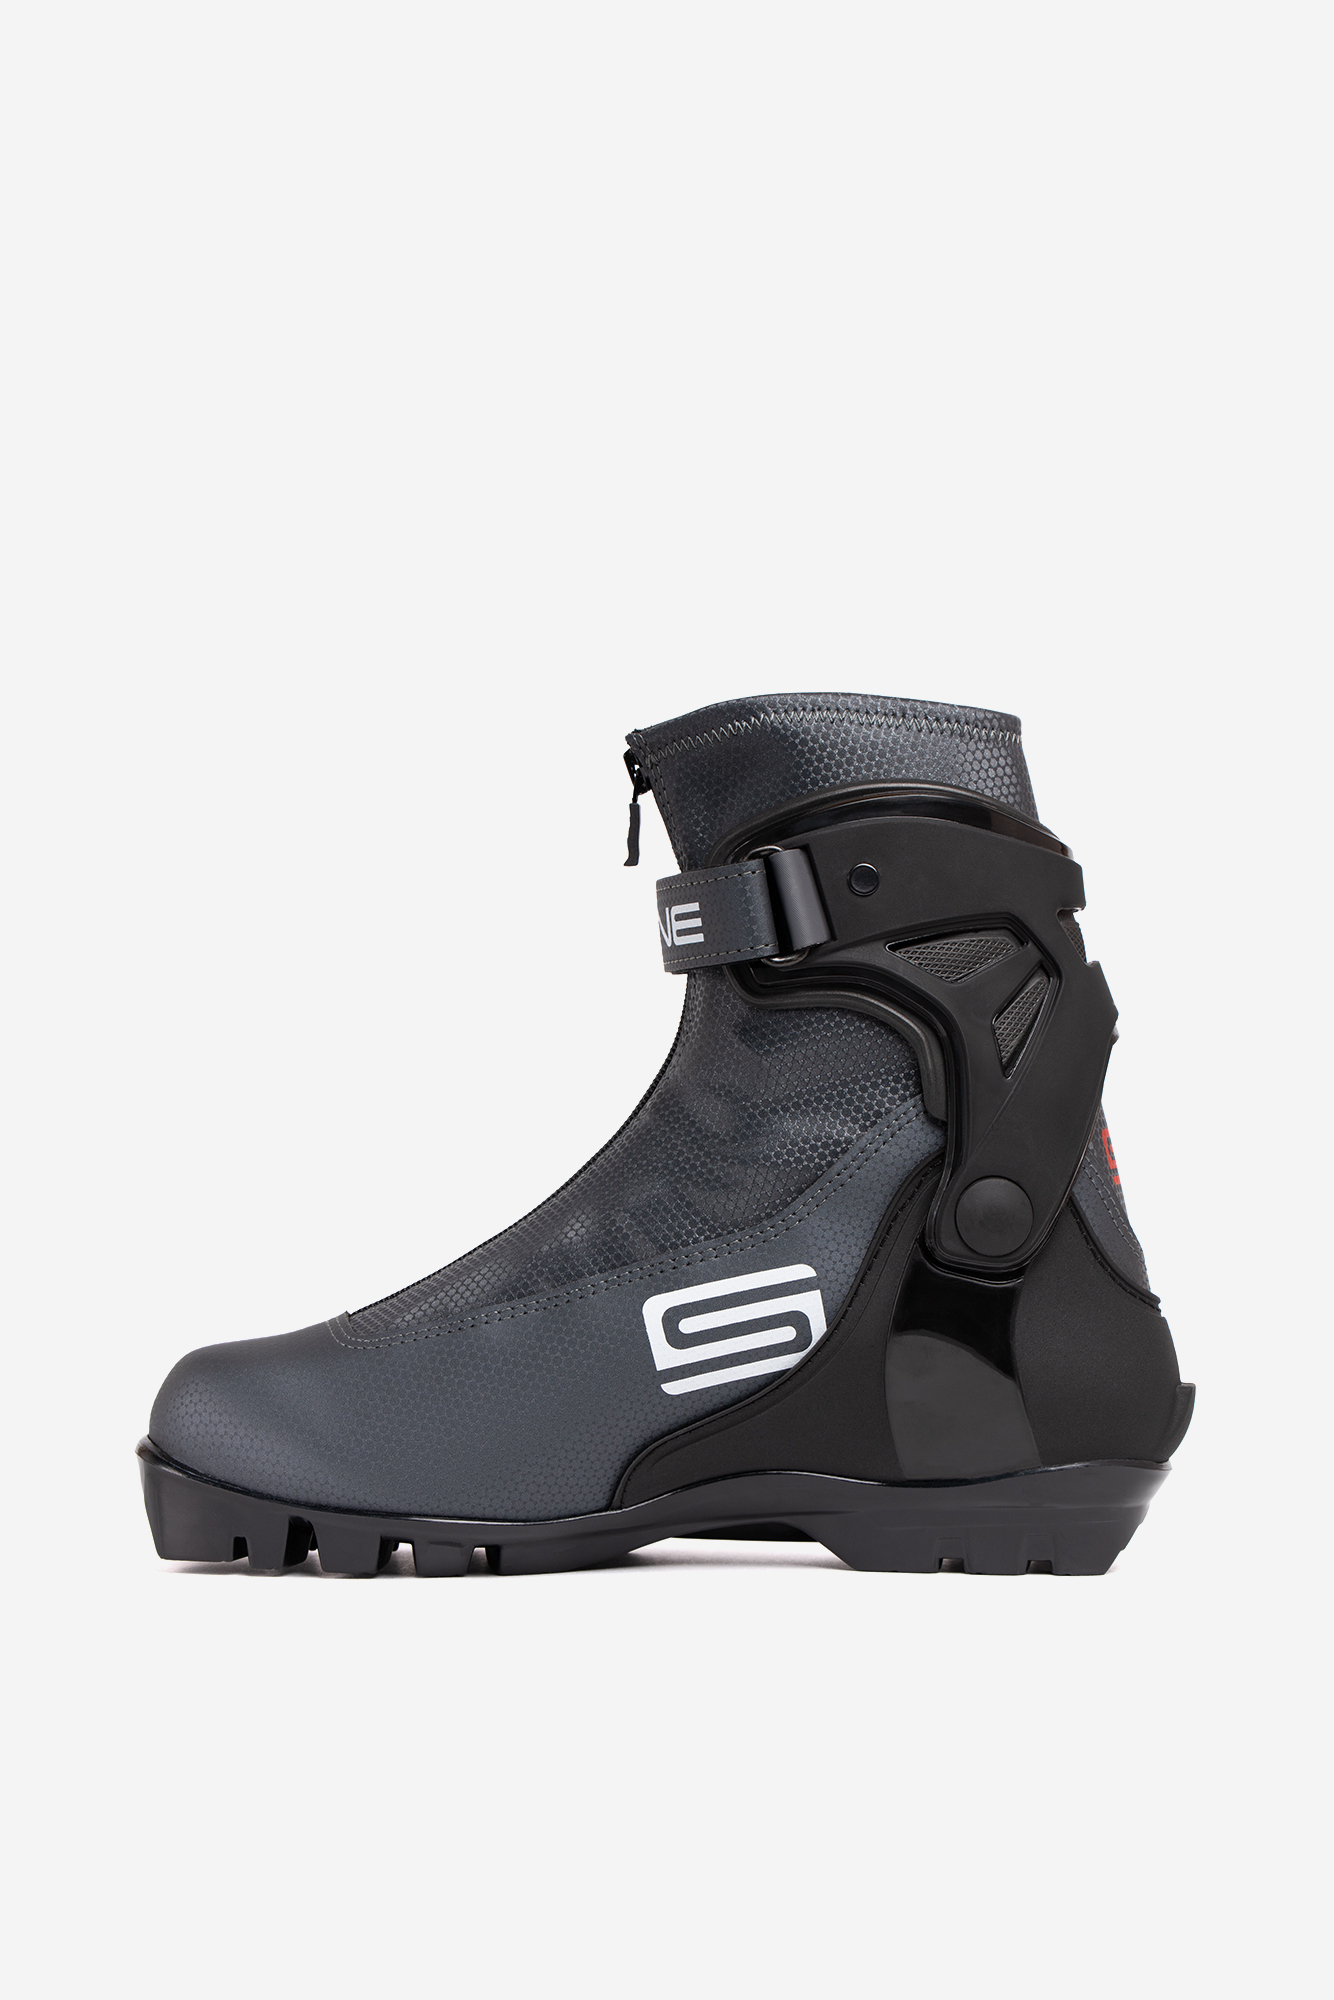 Лыжные ботинки SNS Spine Polaris (485-22) (черный) 1334_2000